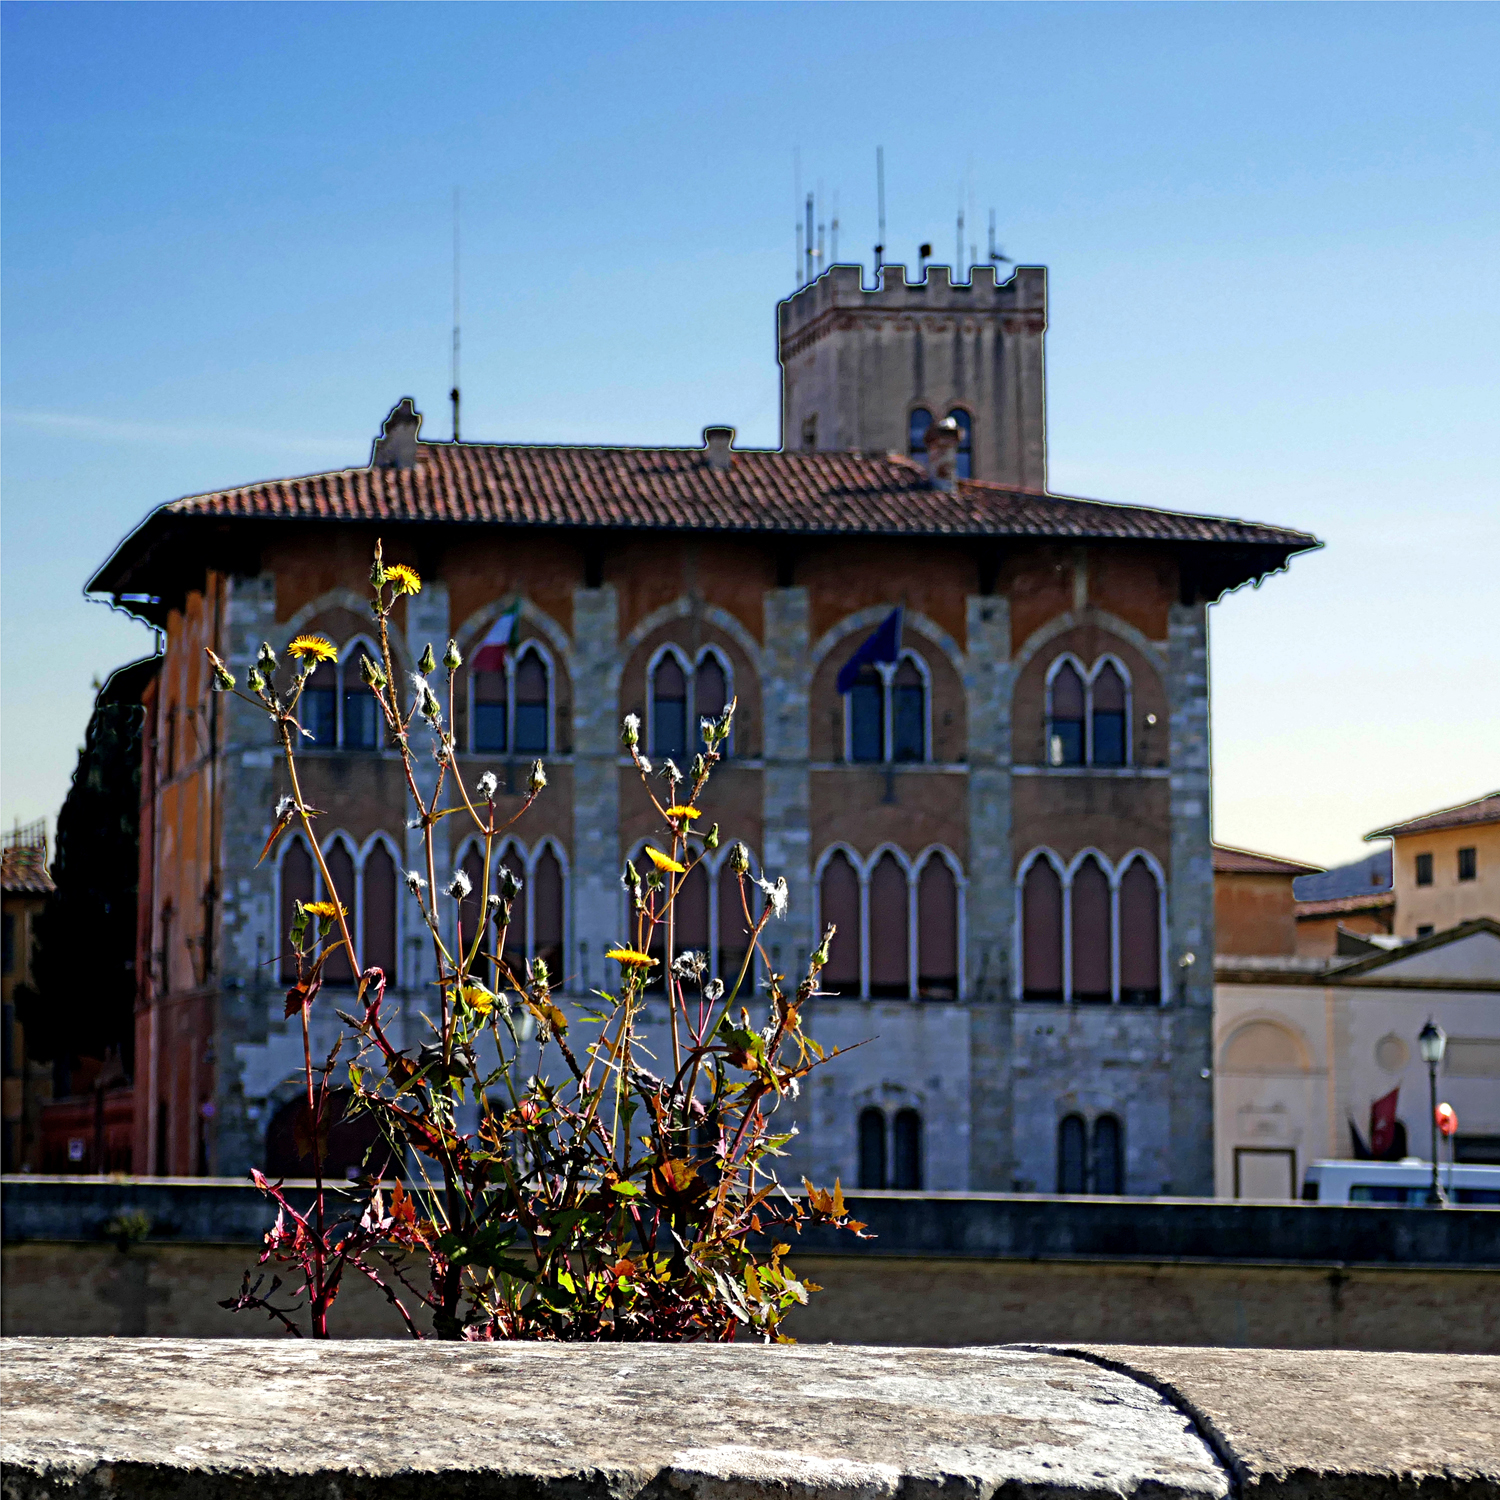 Lungarno Pisa